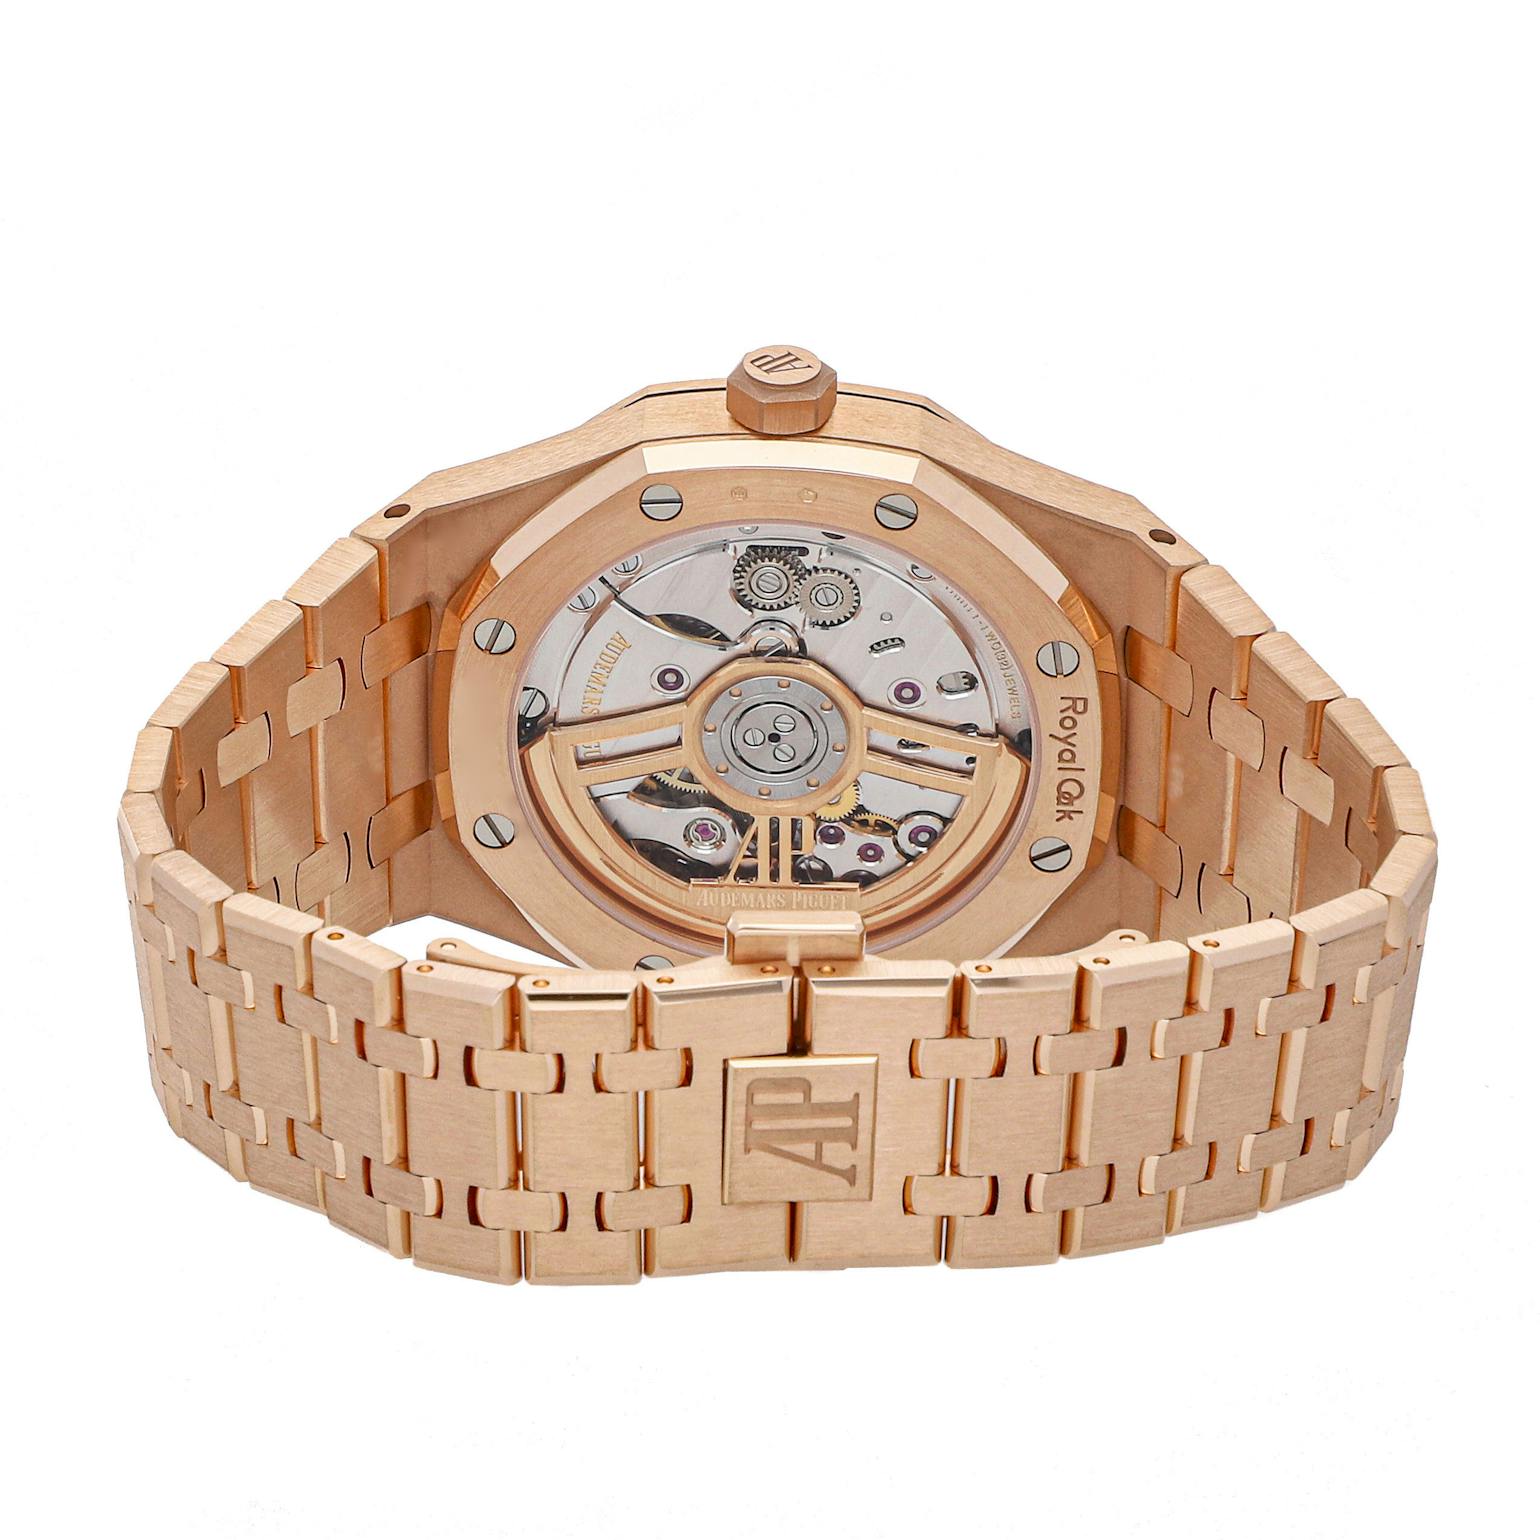 Audemars Piguet Royal Oak Selfwinding Watch, 41mm, 18K Rose Gold, Black Dial, 15500OR.OO.1220OR.01